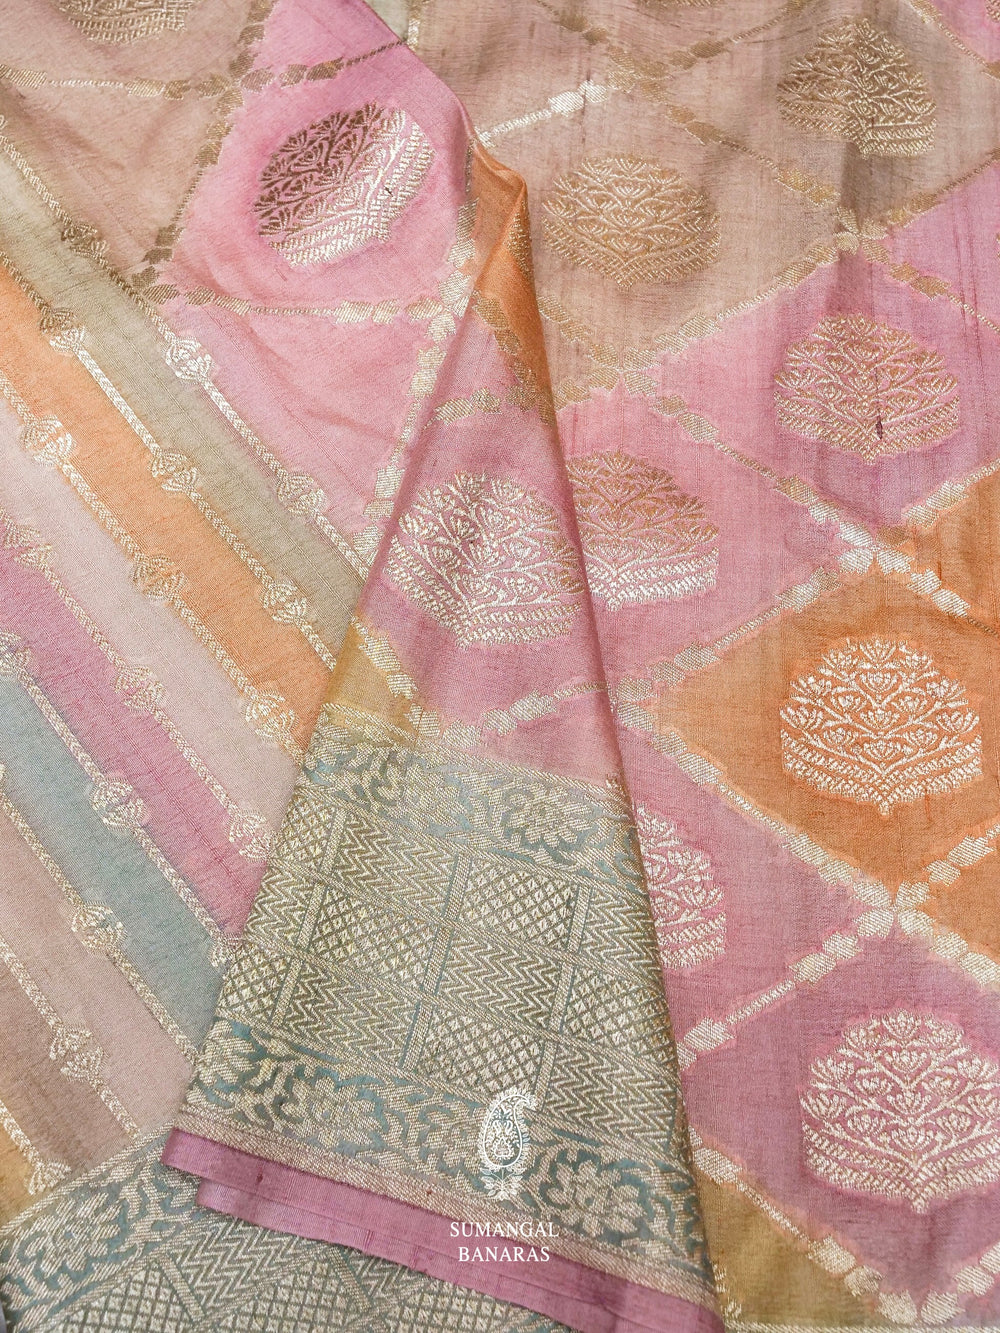 Handwoven Rangkat Banarasi Tussar Silk Saree